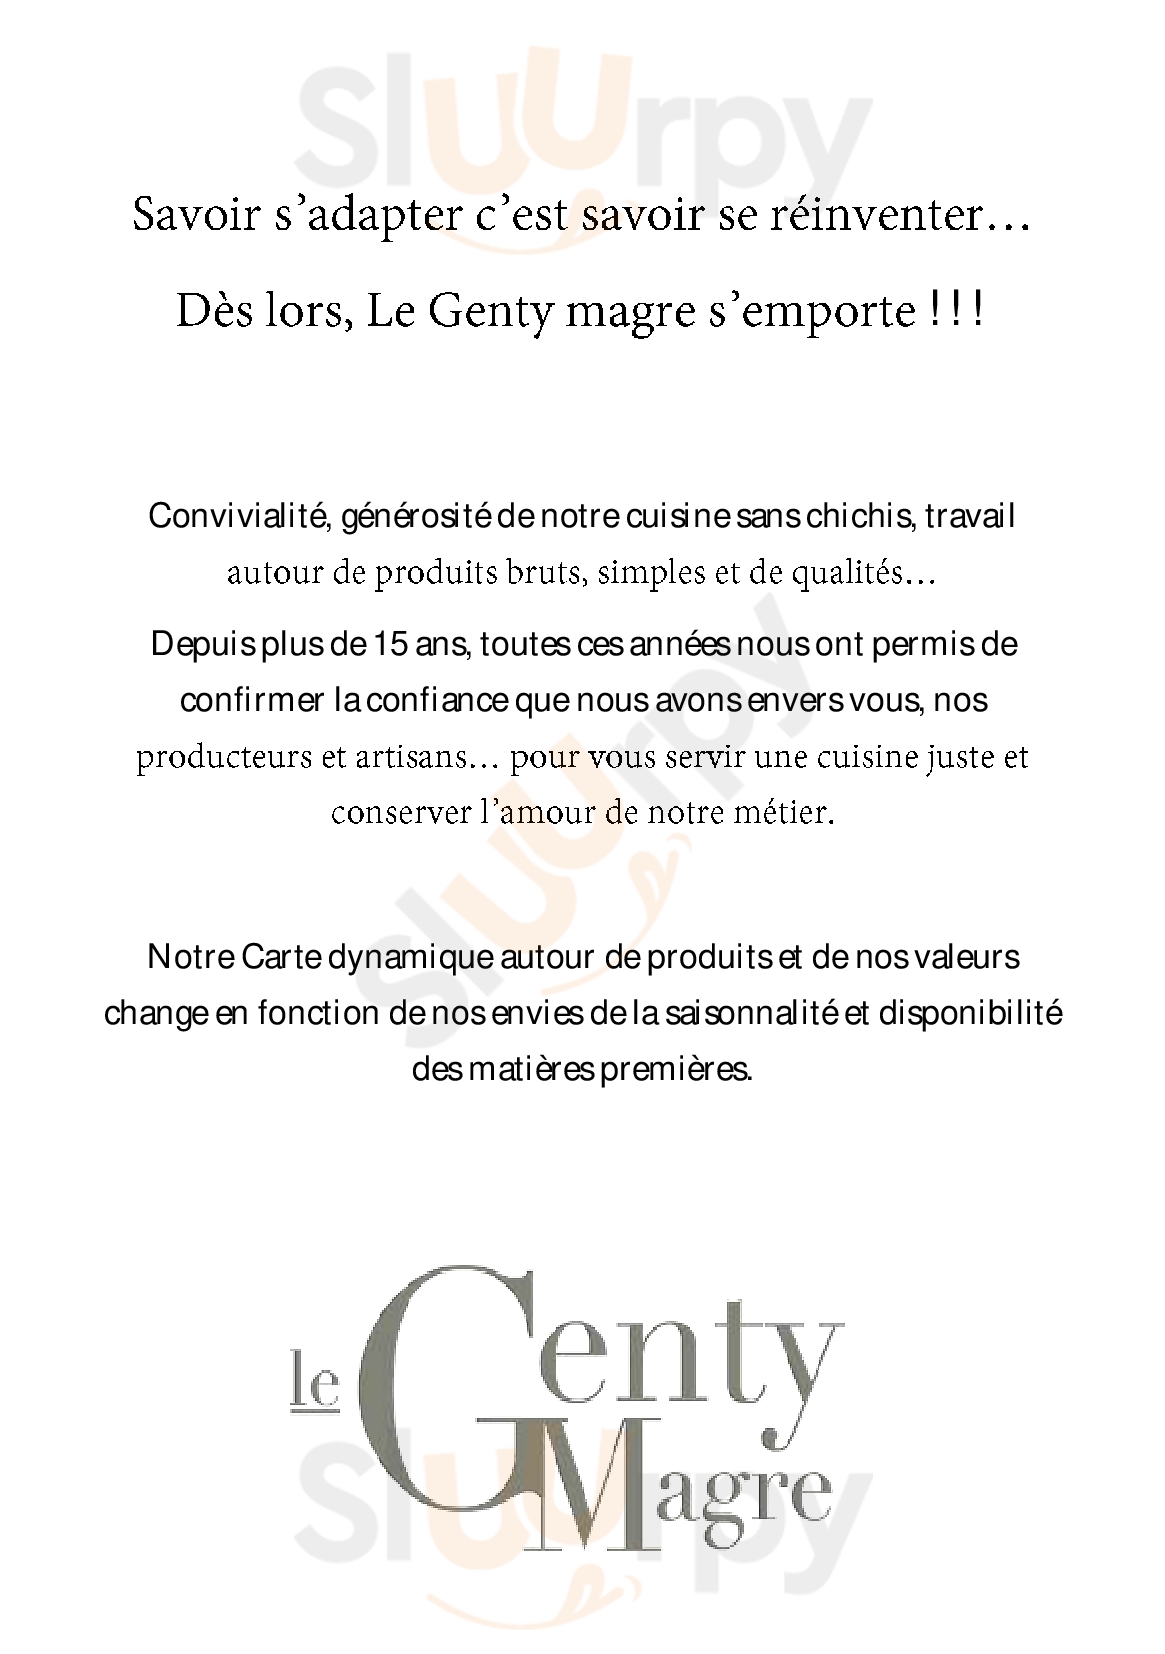 Le Genty Magre Toulouse Menu - 1